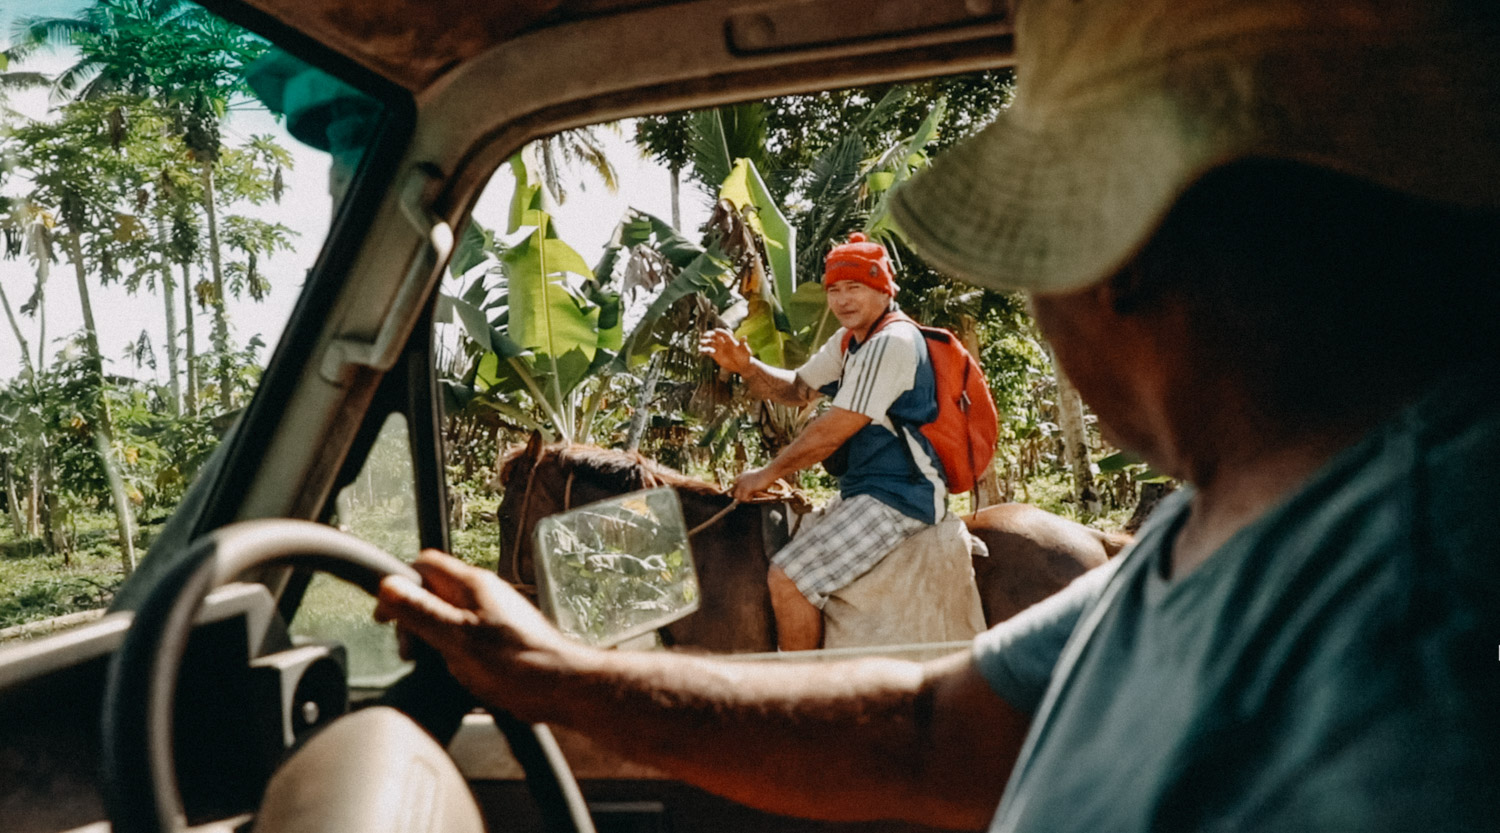 BecomingFogalepolo-Samoa-organicfarm-healthyeating-farmer-agriculture-documentary-photography-documentaryfilm-organicfarming-28-2_COVER